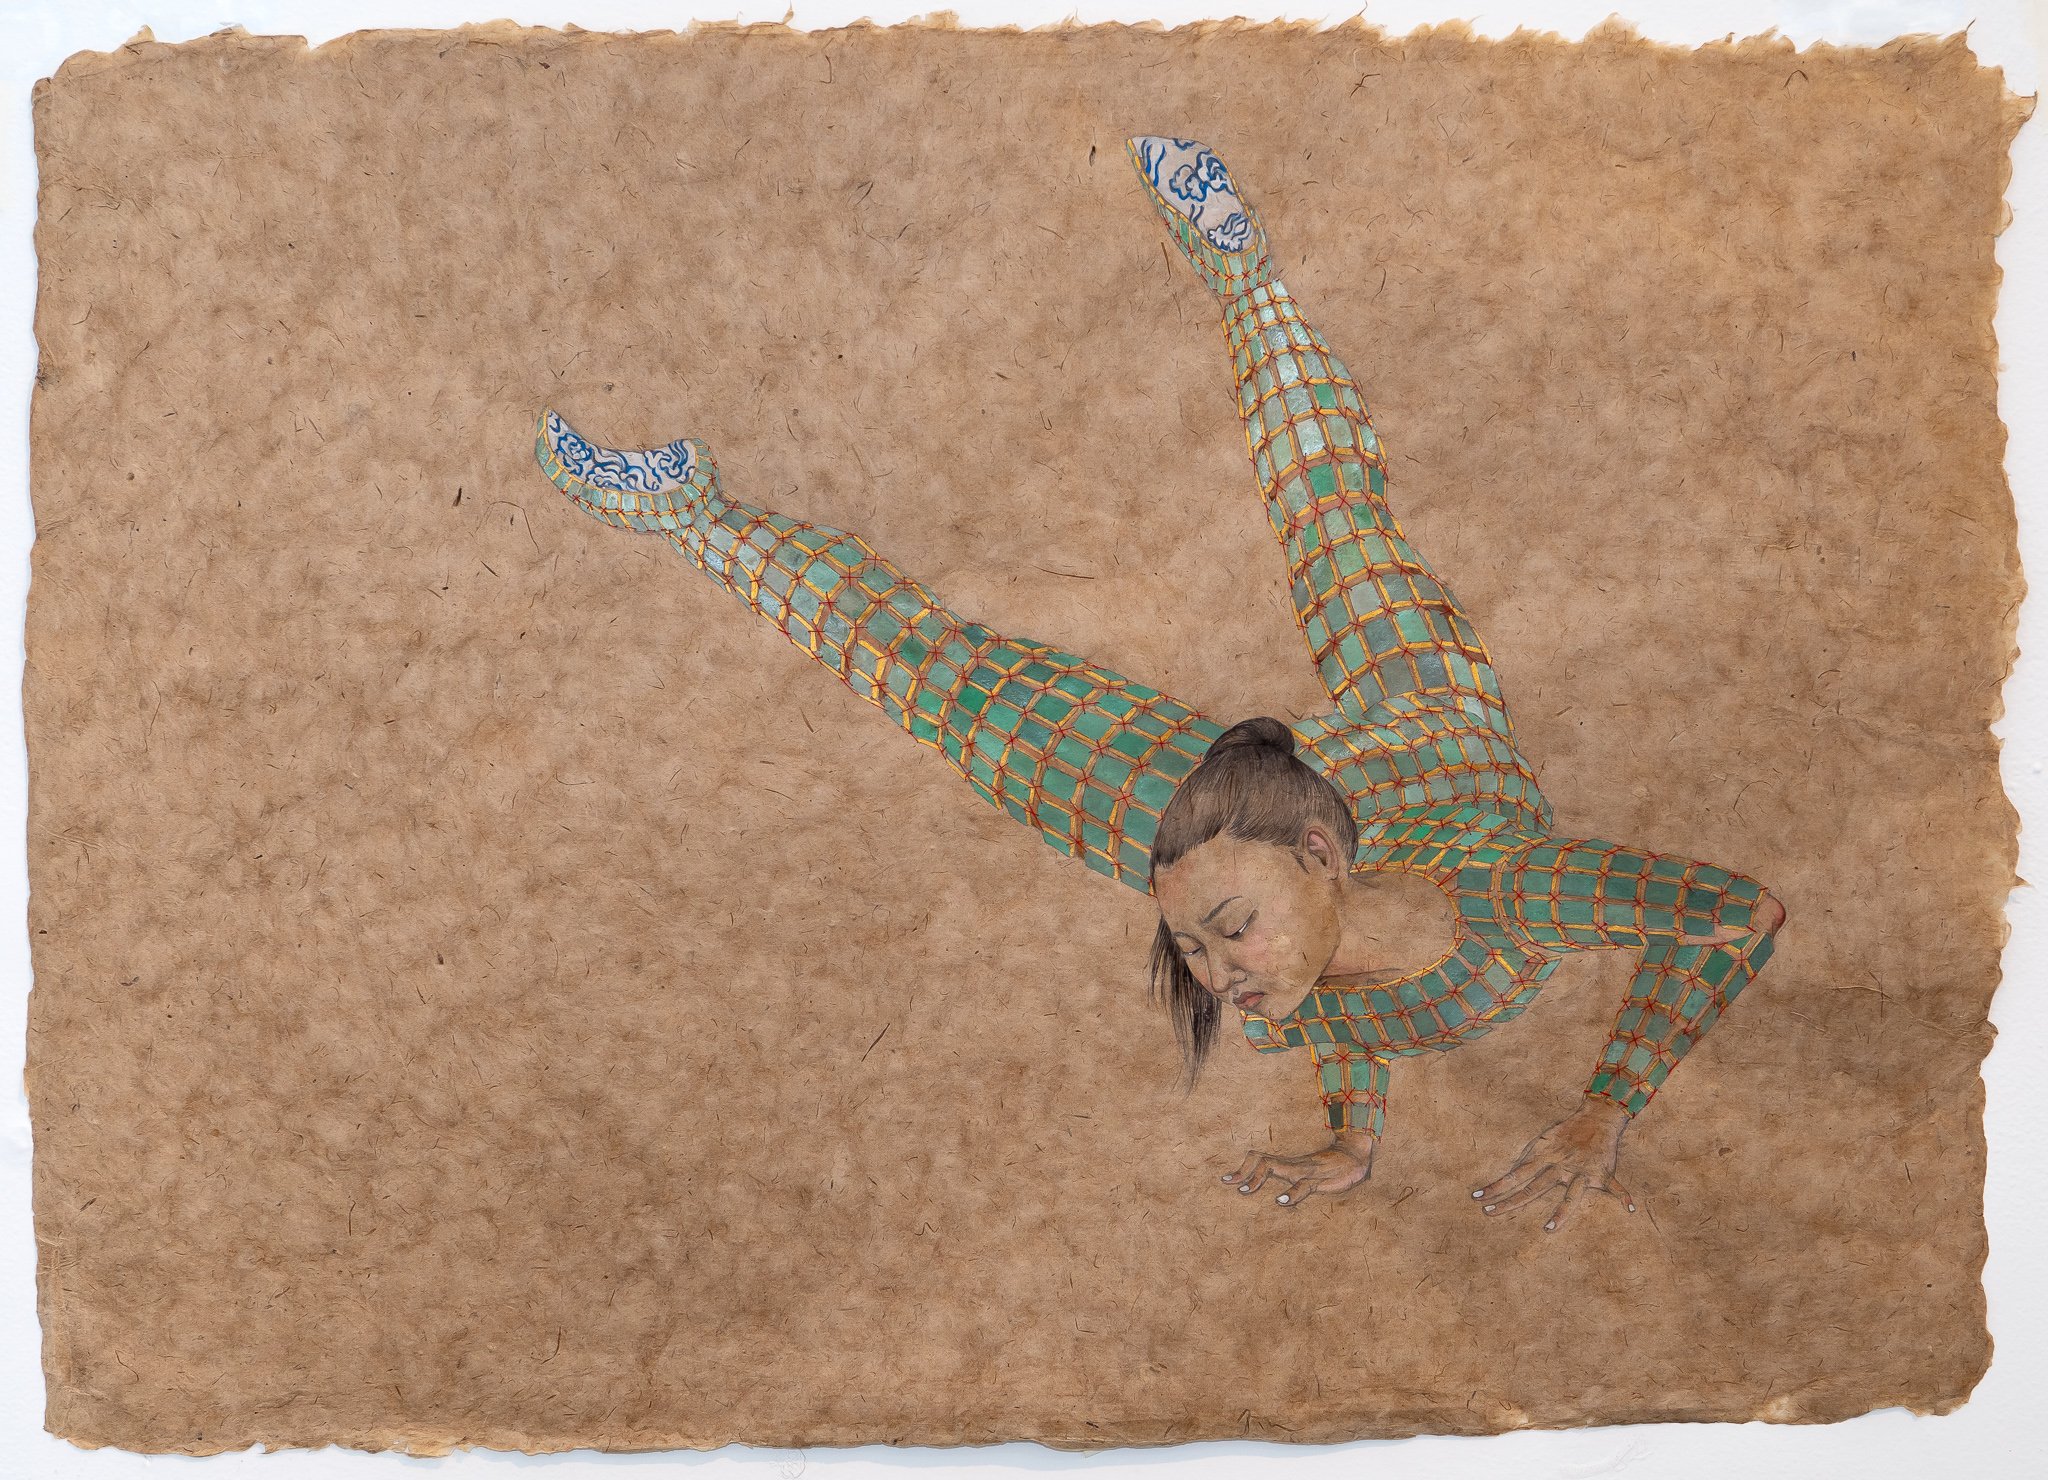   Escape Artist , 2021 23.5 x 32 inches Graphite, watercolor, thread on Bhutan  paper 